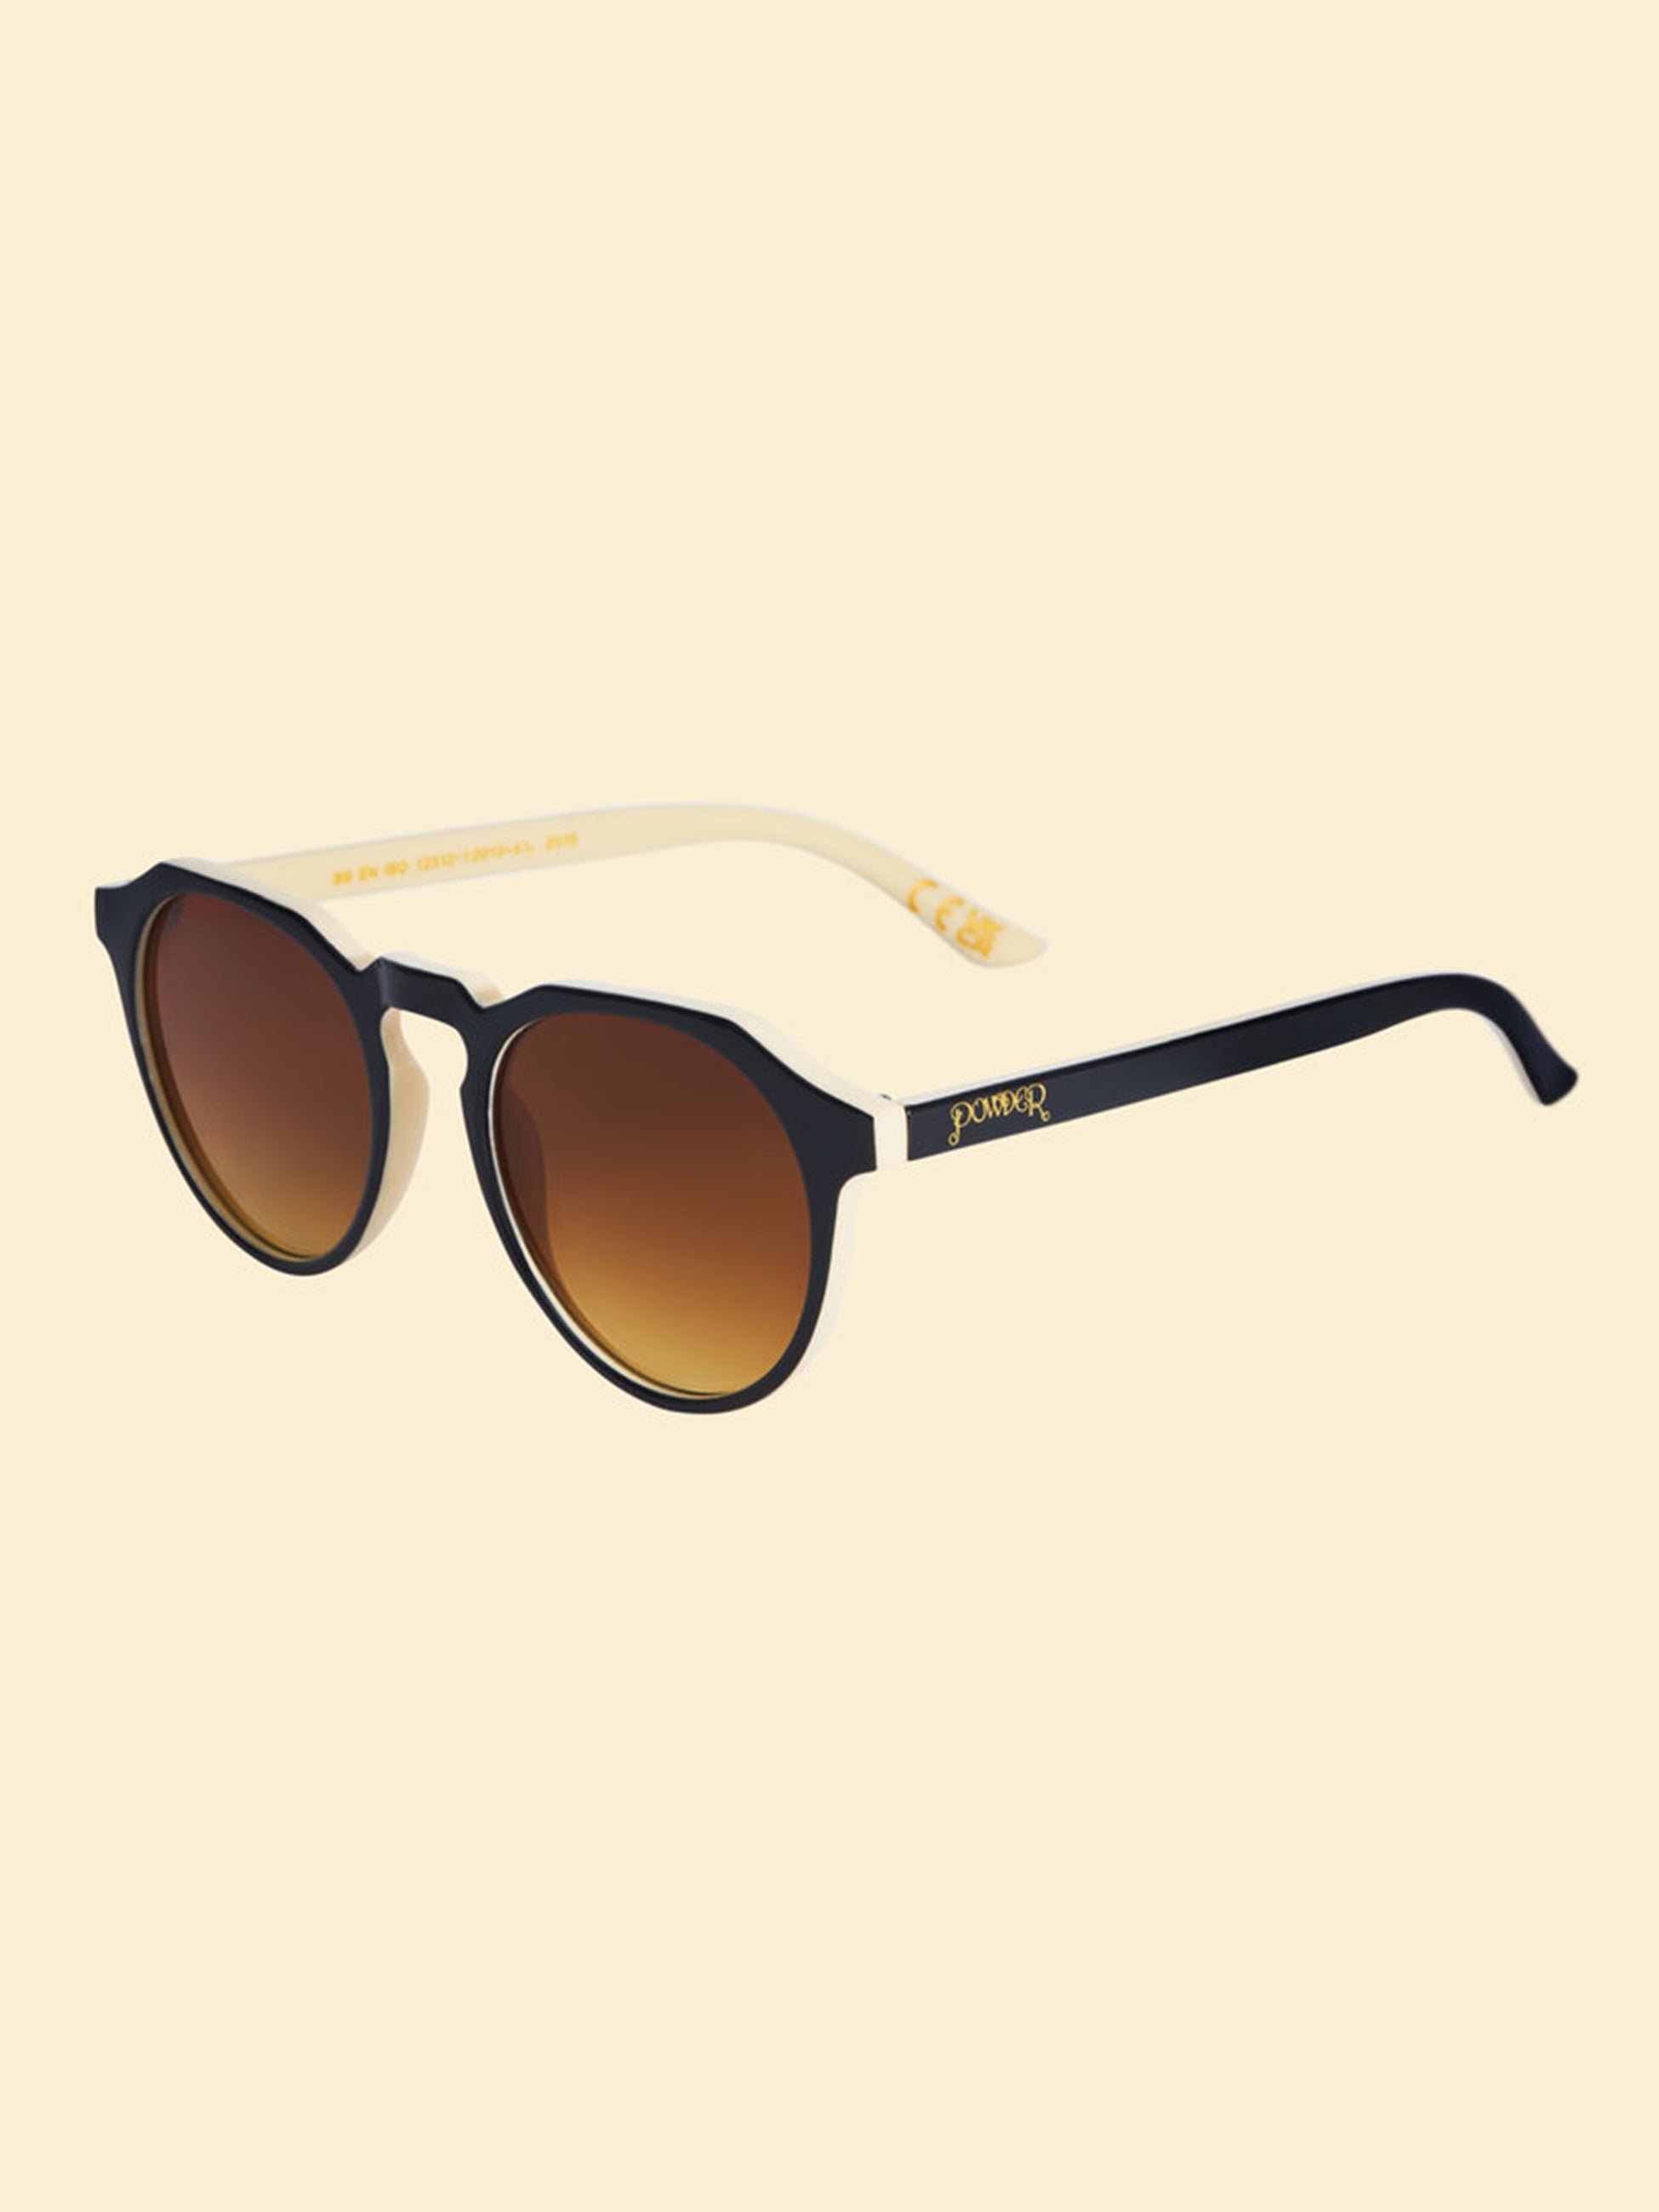 Mirren Sunglasses Limited Edition - Cappuccino